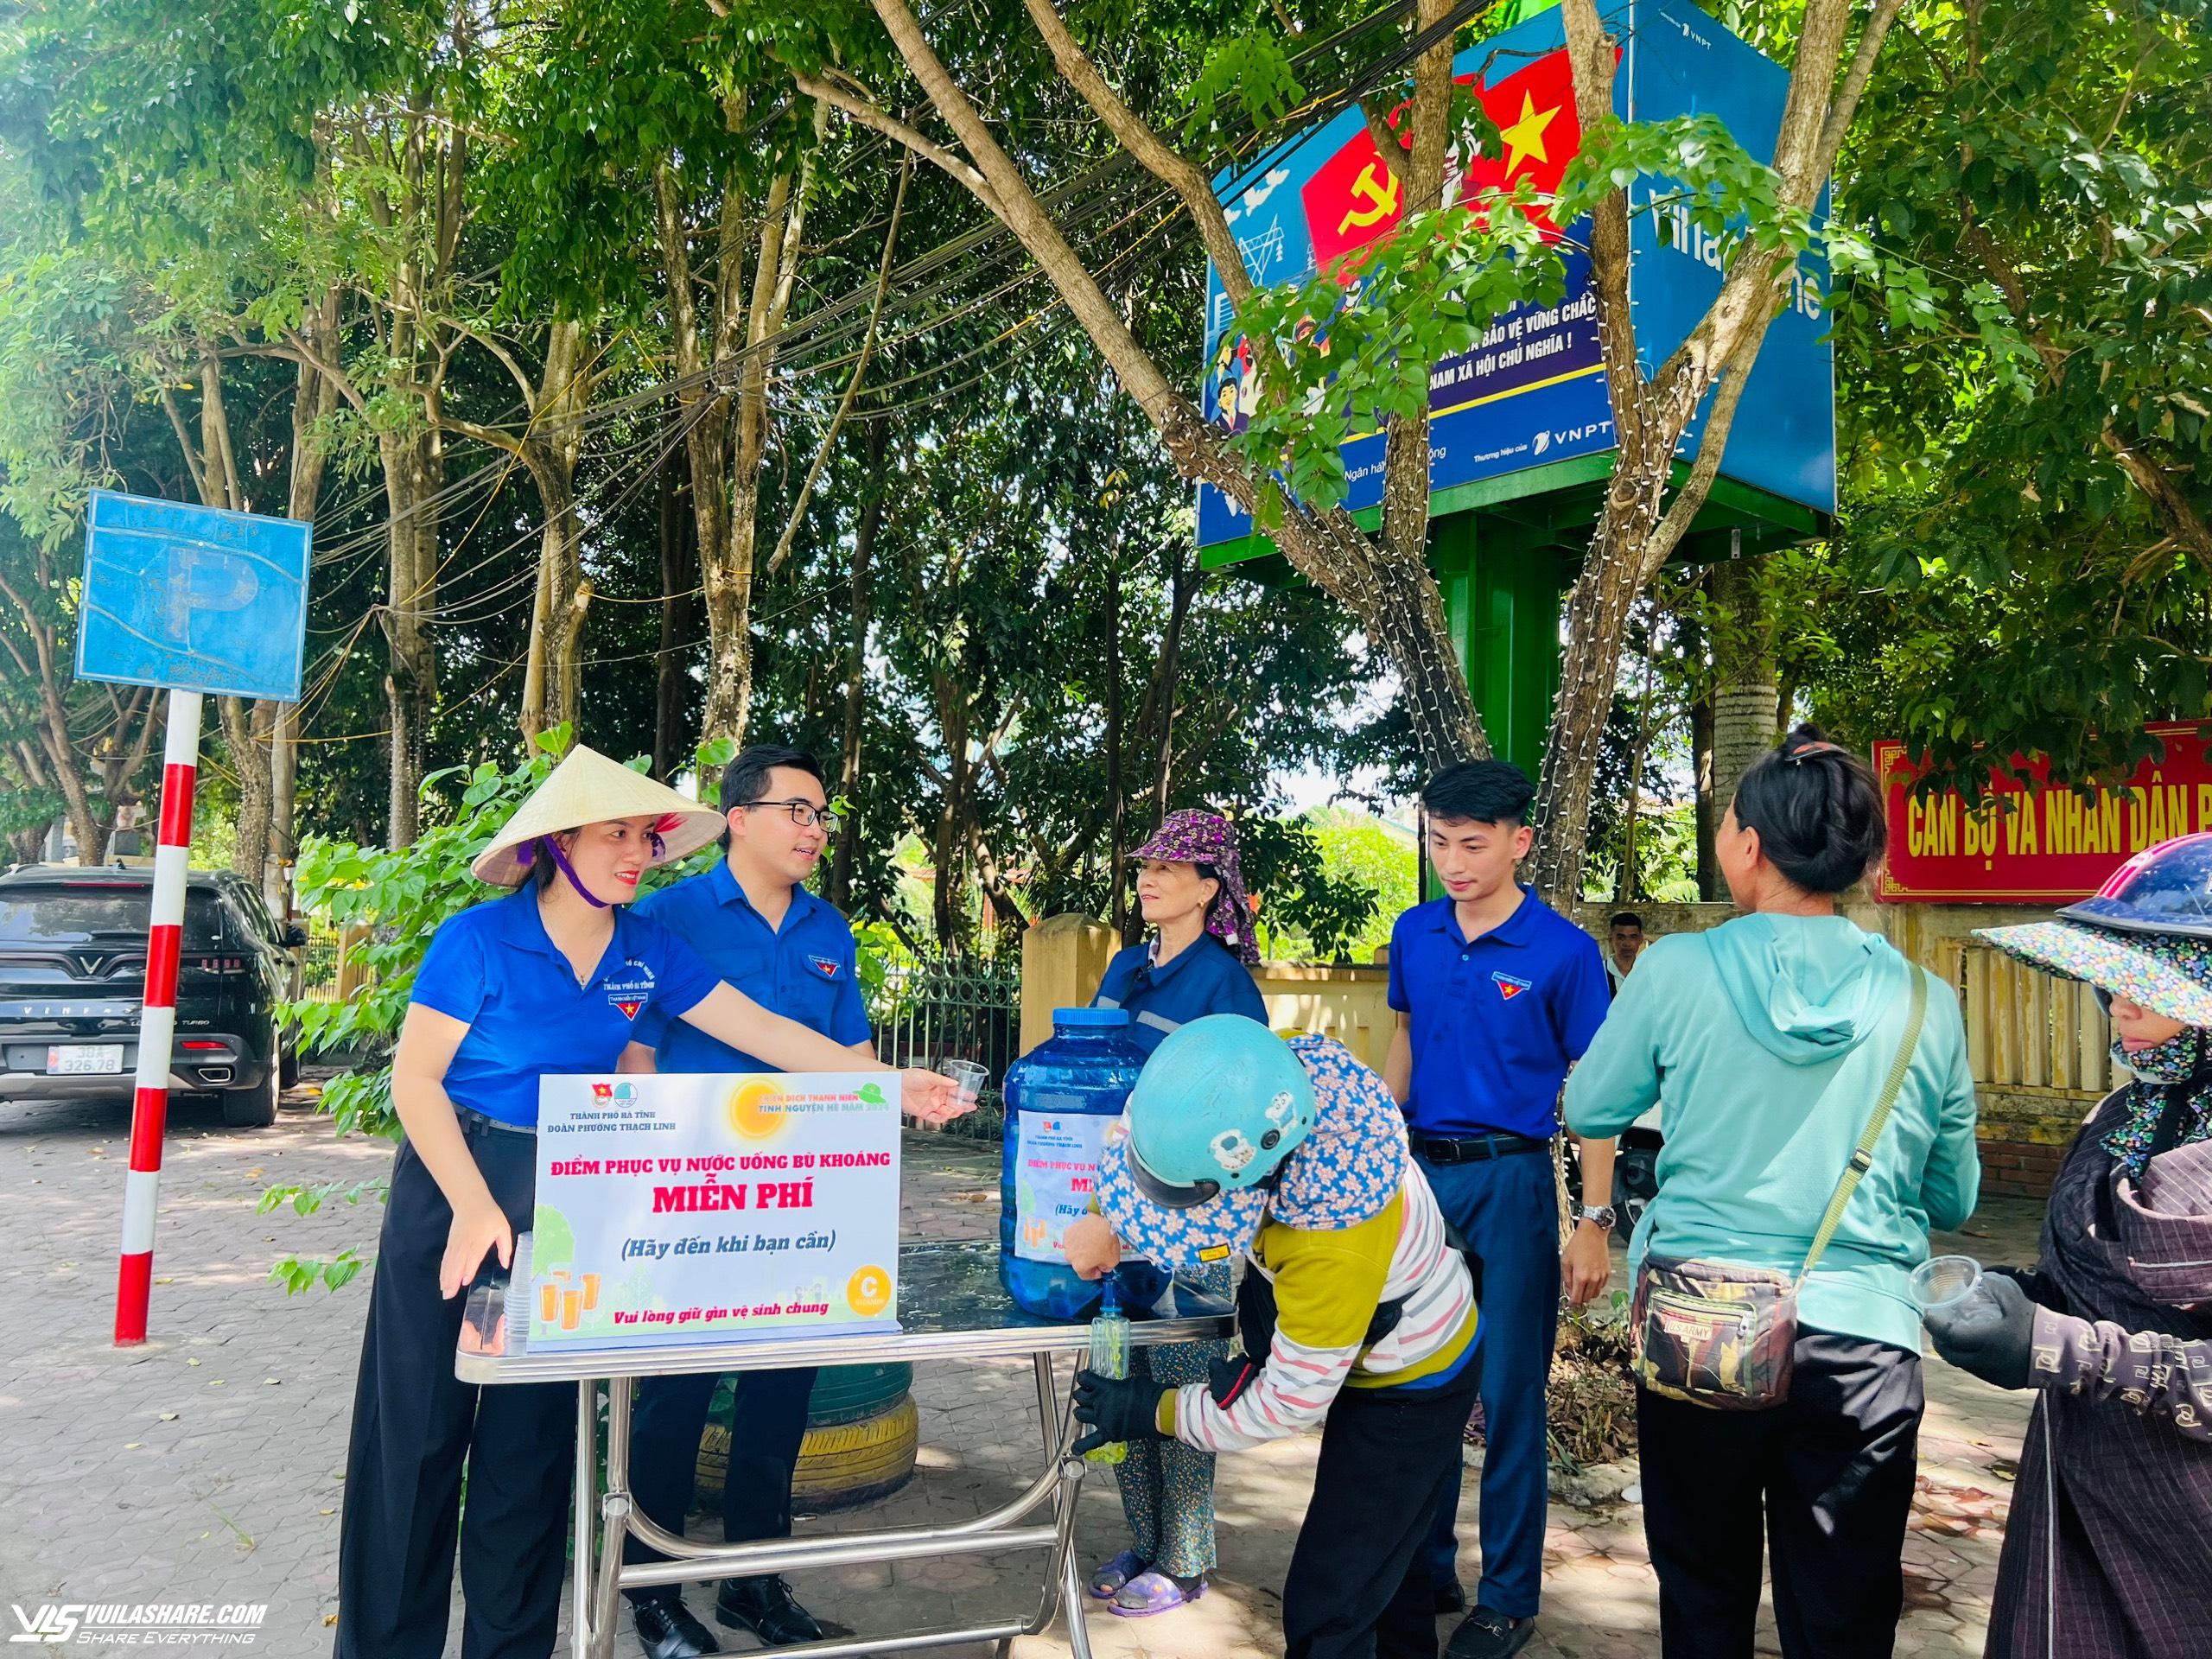 Mở điểm phục vụ nước uống miễn phí cho người đi đường trong những ngày nắng nóng- Ảnh 2.